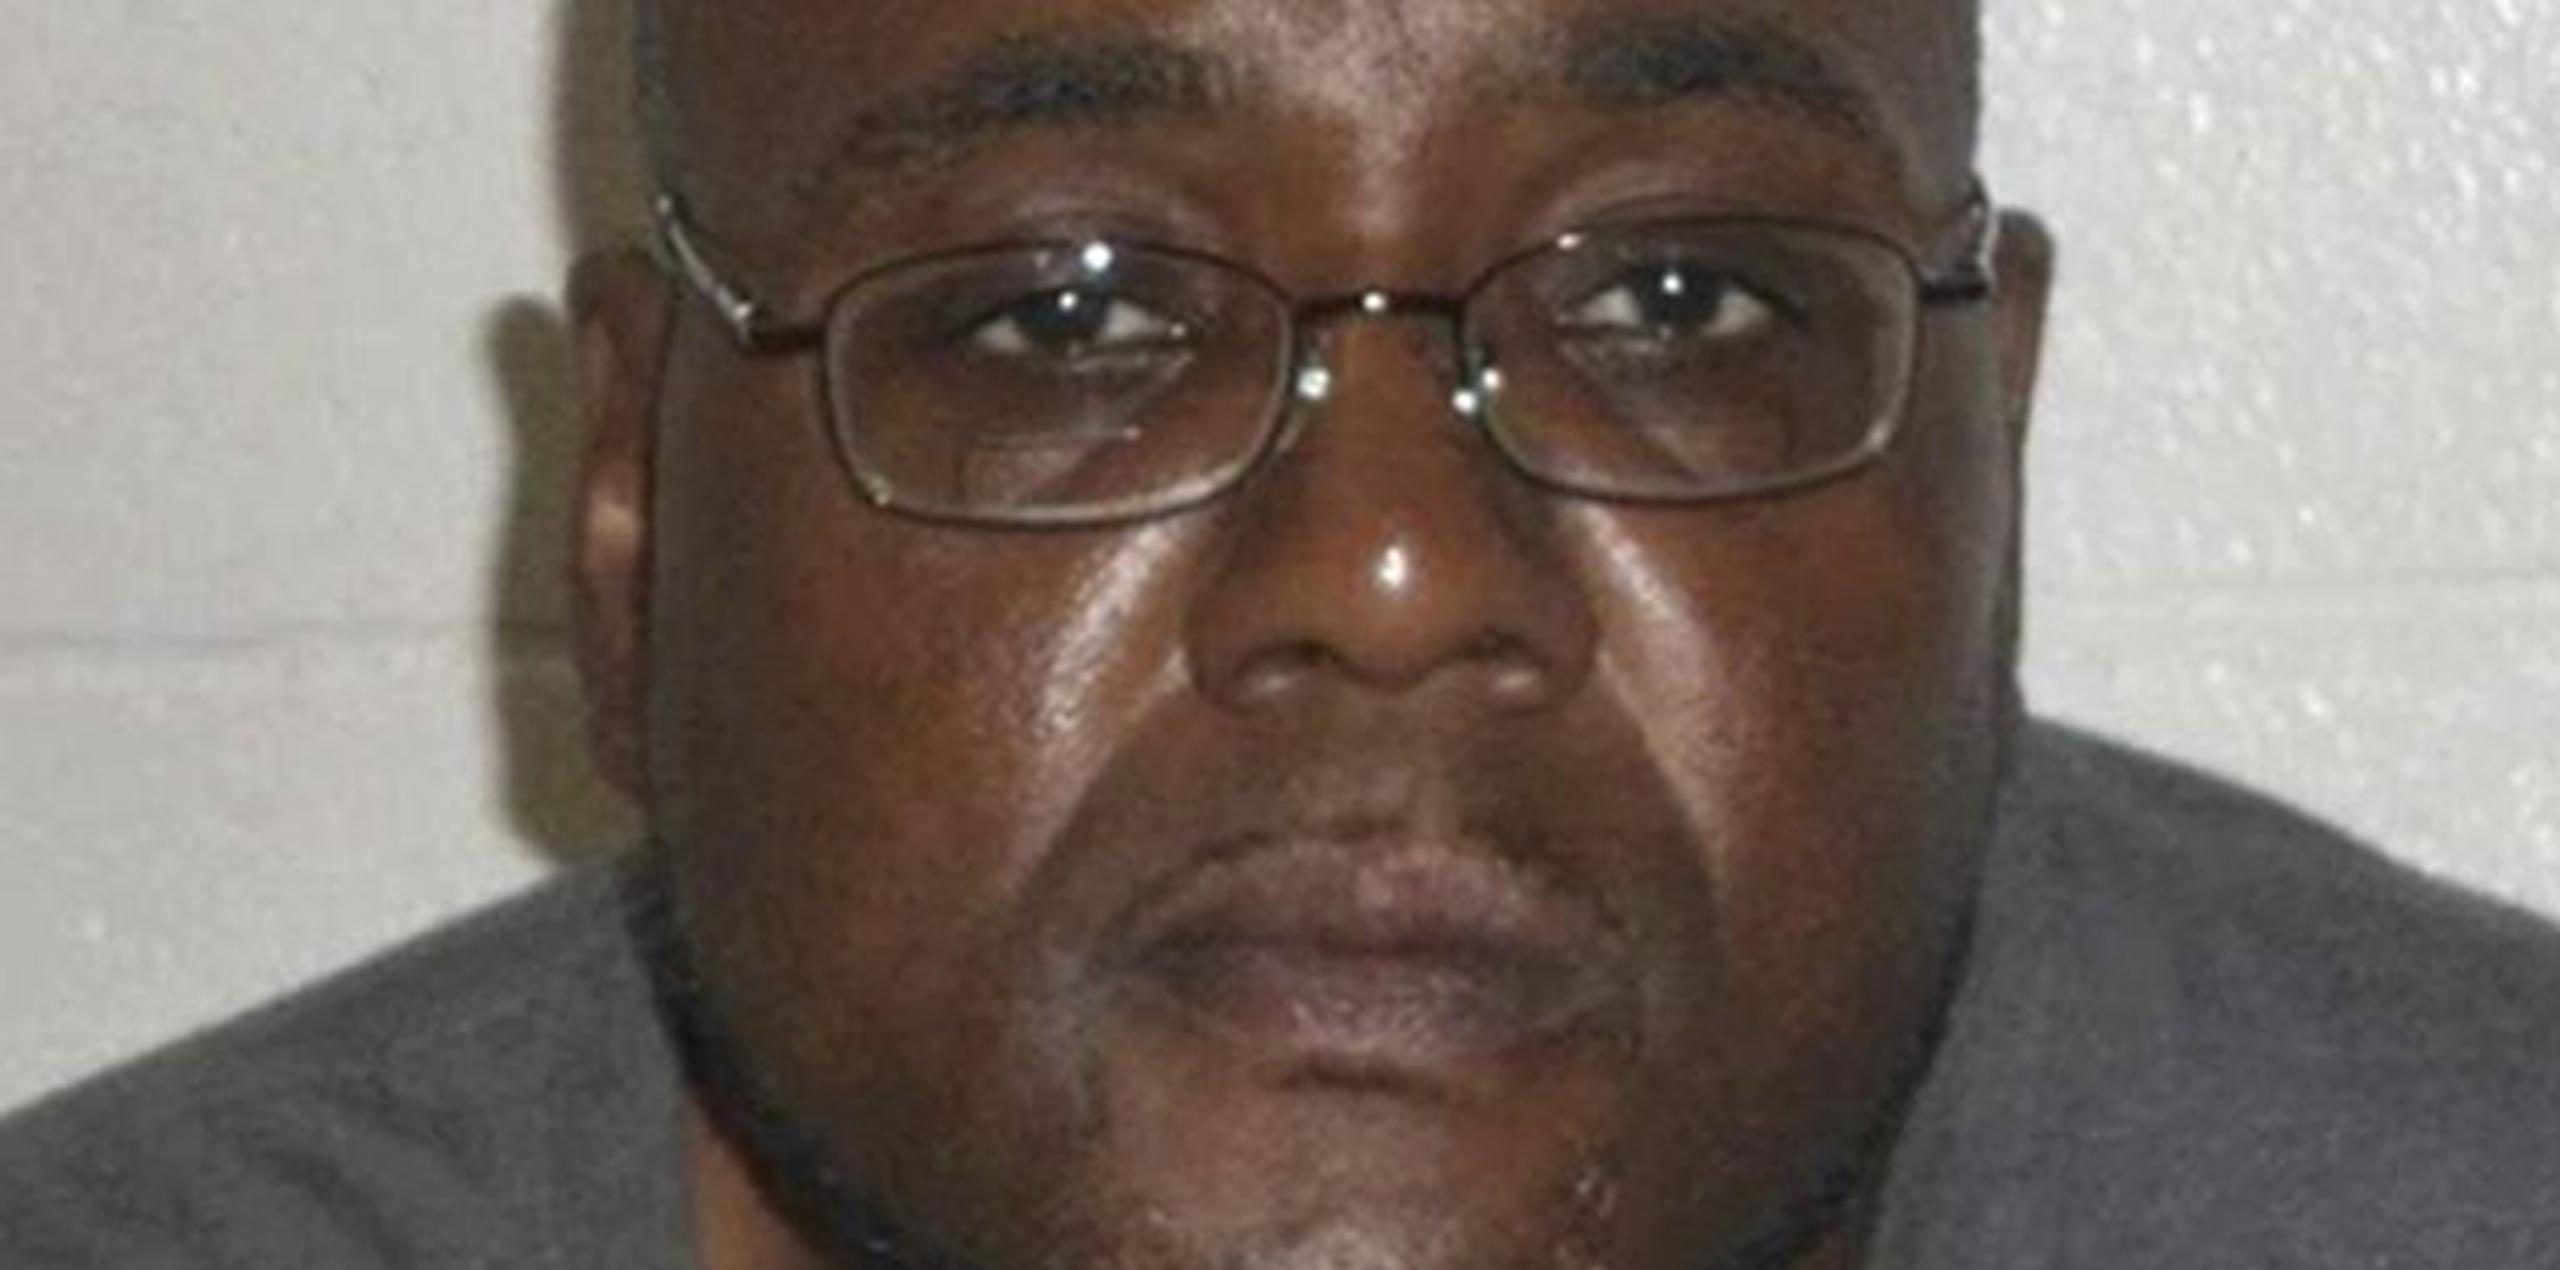 Demetrius Nathaniel Pitts, fue arrestado por el FBI al detectar que estaba intentando perpetrar un atentado en el centro de la ciudad Cleveland (Ohio) aprovechando las celebraciones del 4 de julio. (EFE)